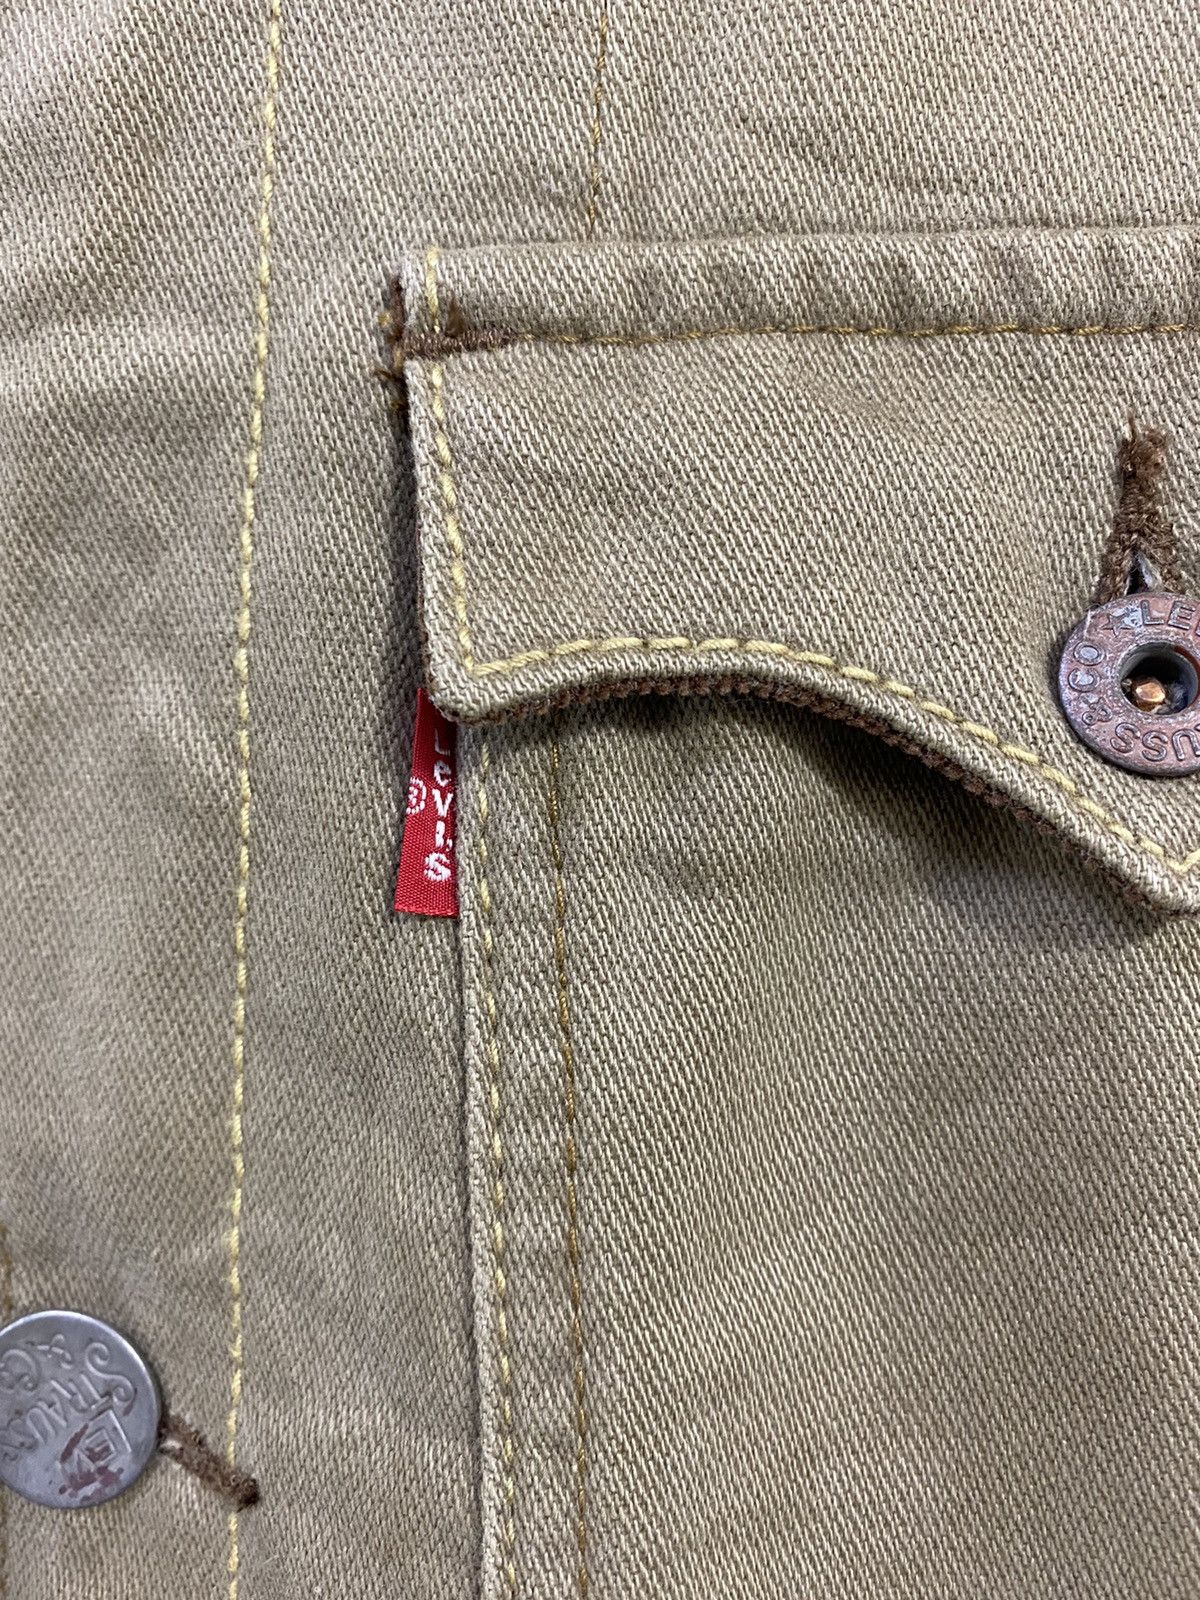 Vintage Levi’s Chore Jacket Design 3 Pocket Nice Design - 5